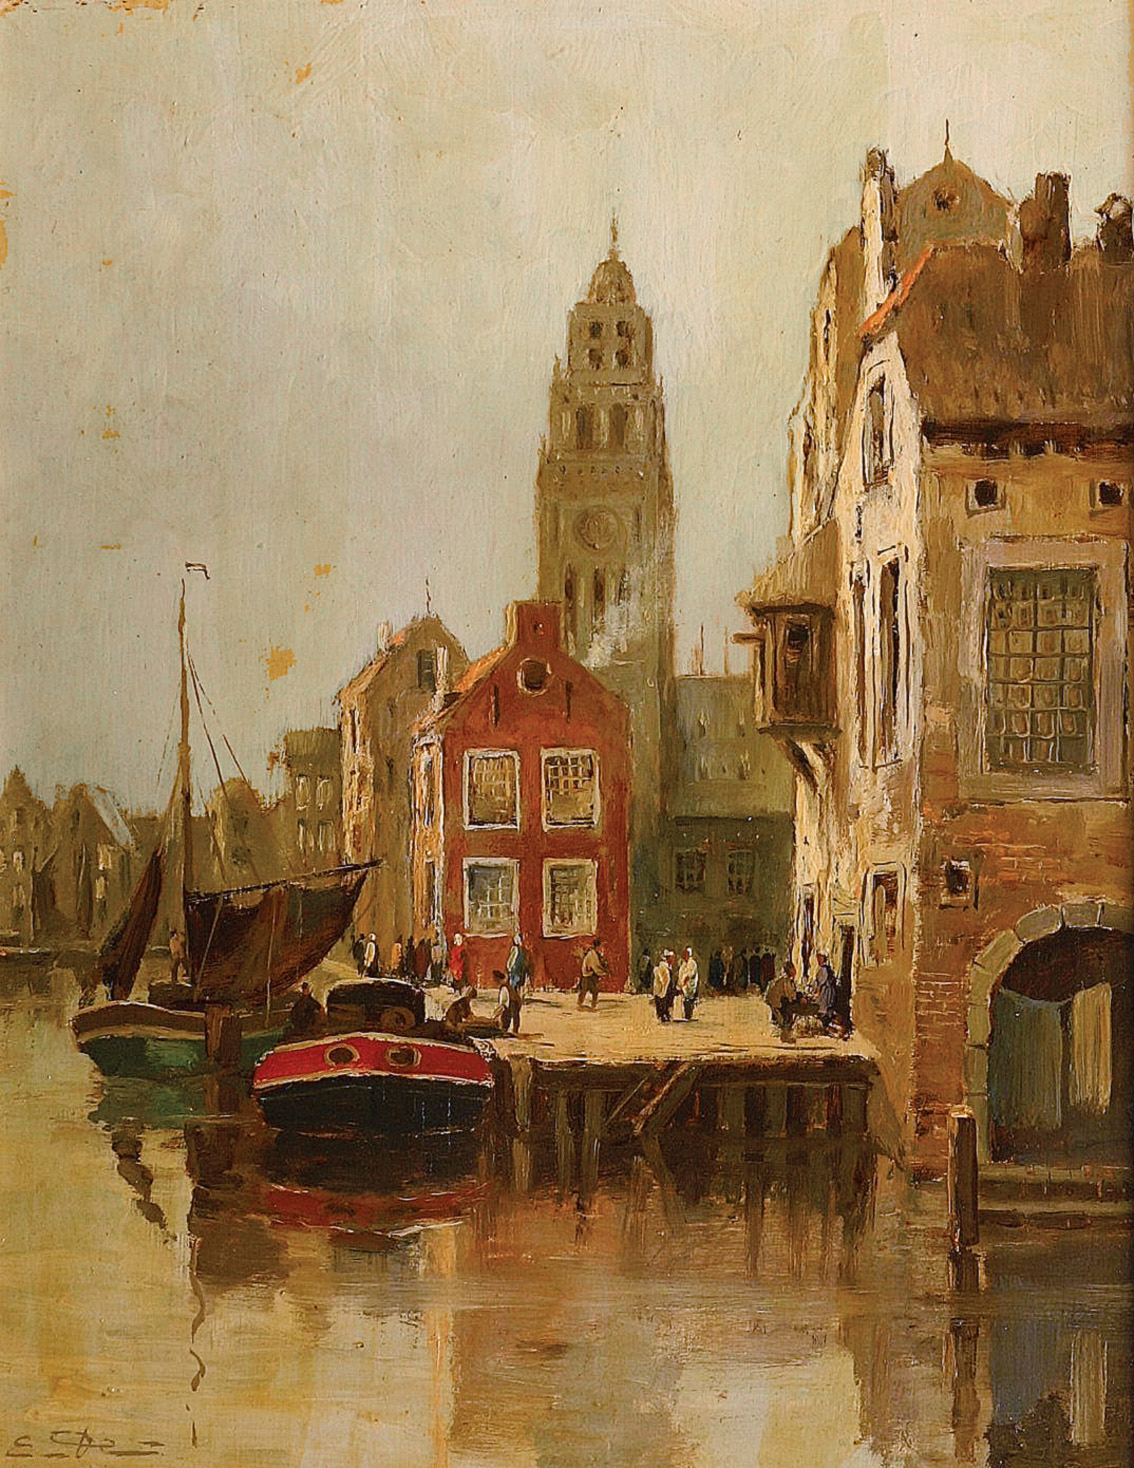 A Dutch harbour